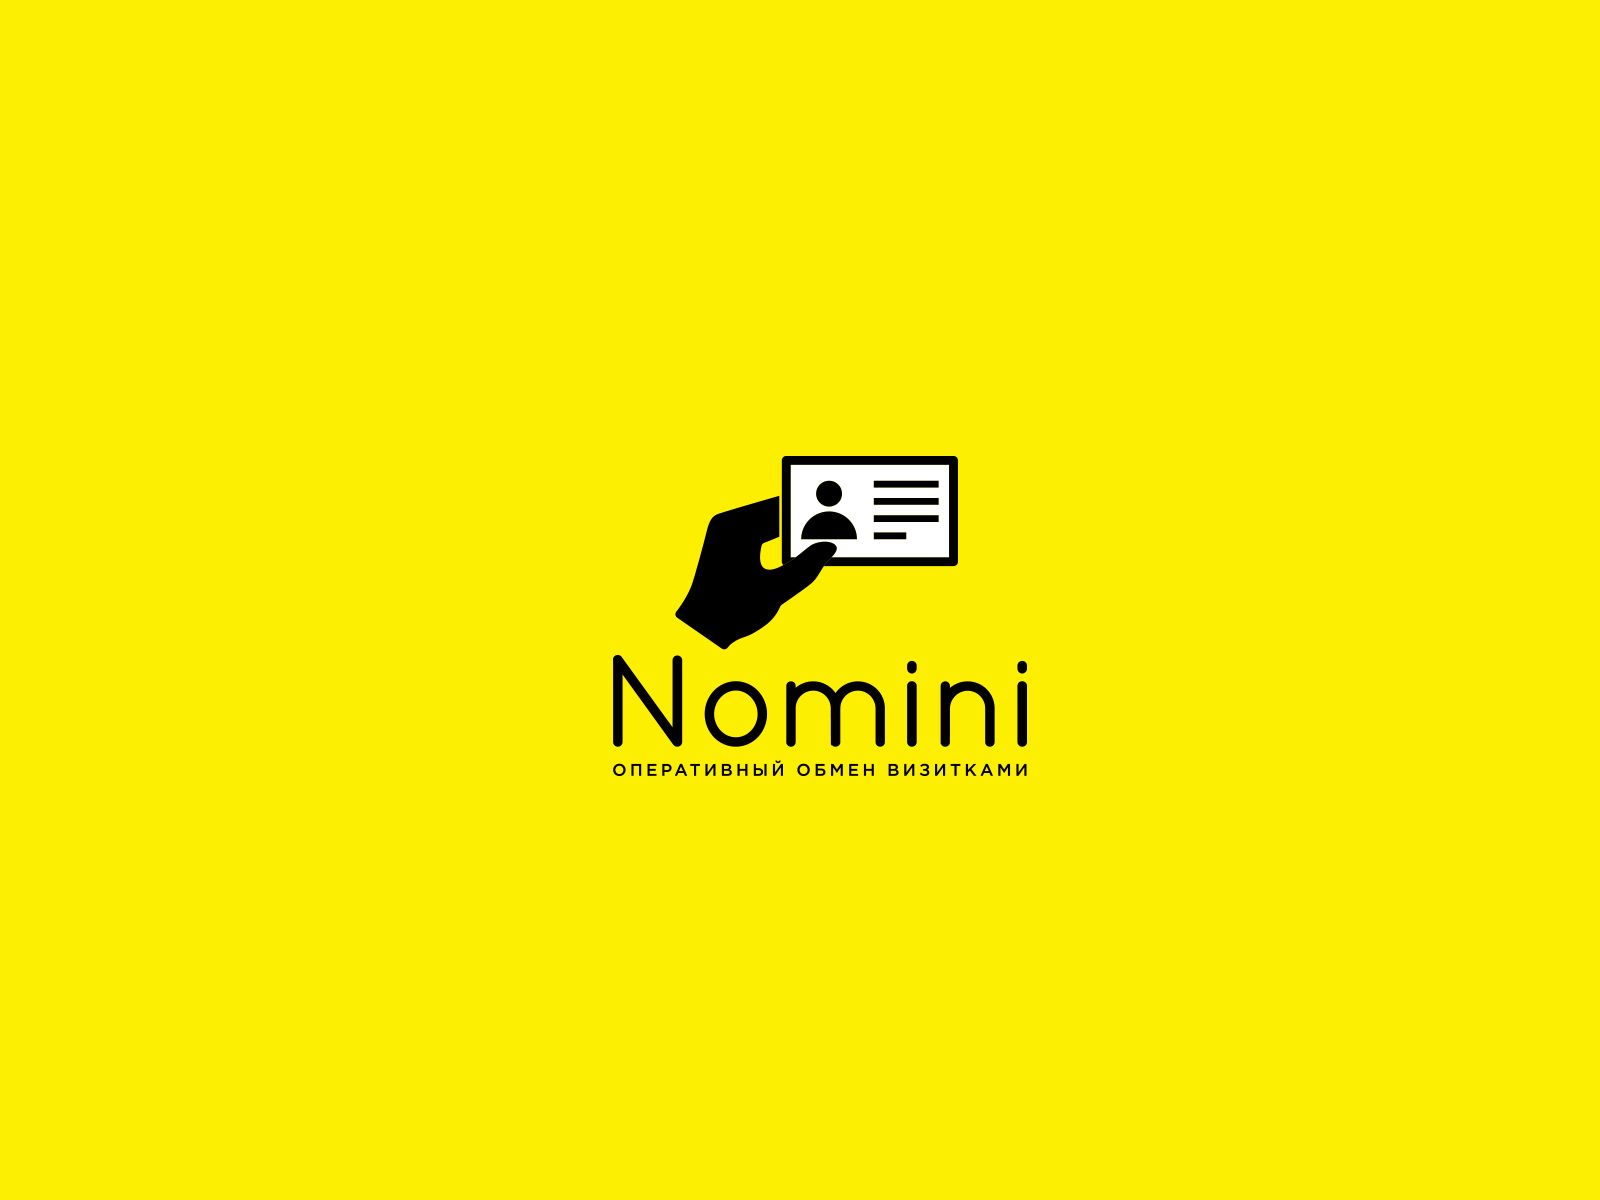 Логотип и иконка для iOS-приложения Nomini - дизайнер U4po4mak